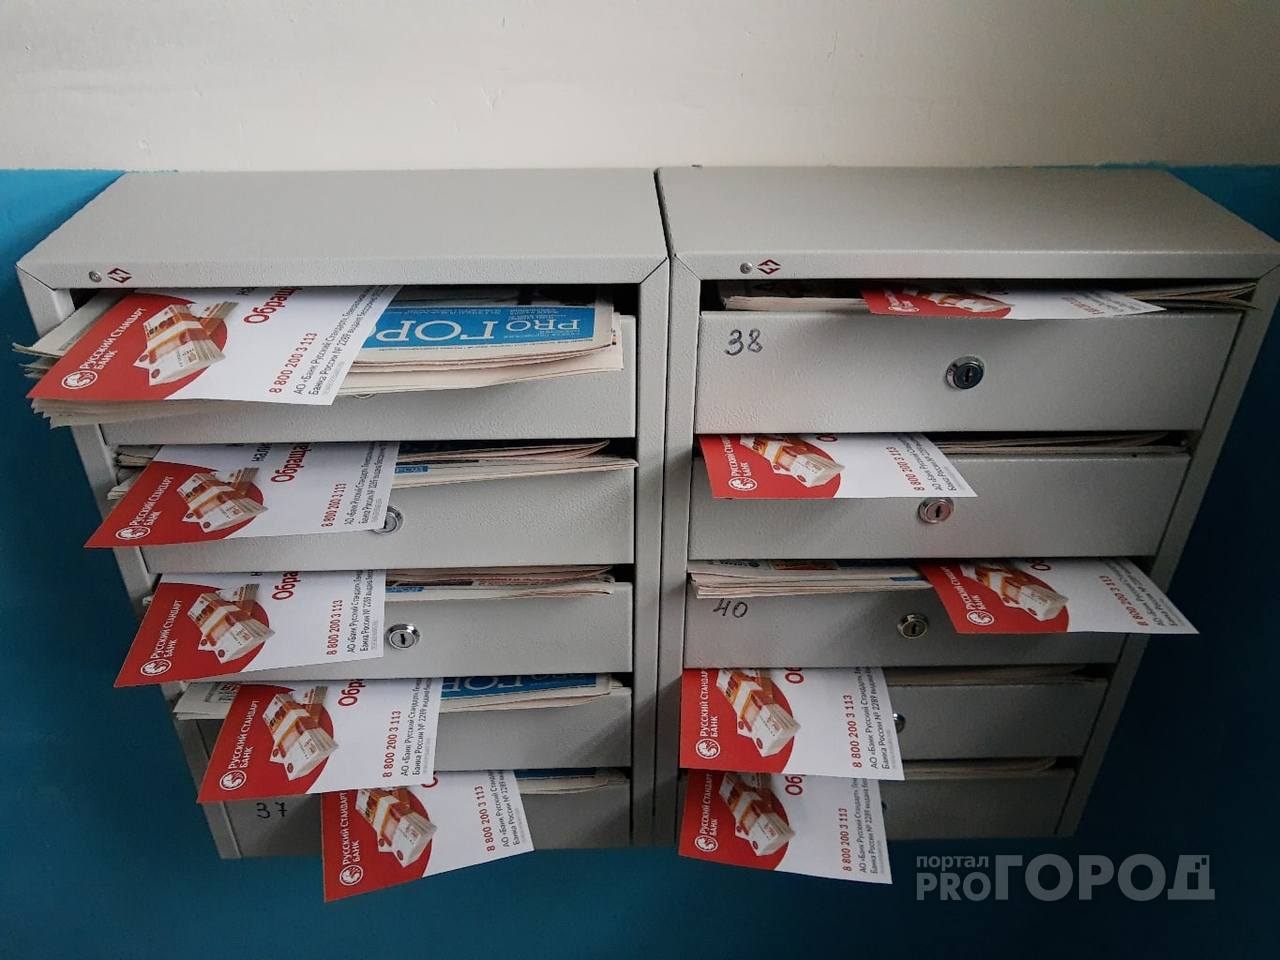 Распространение листовок по почтовым адресам — эффективная и надежная форма рекламы